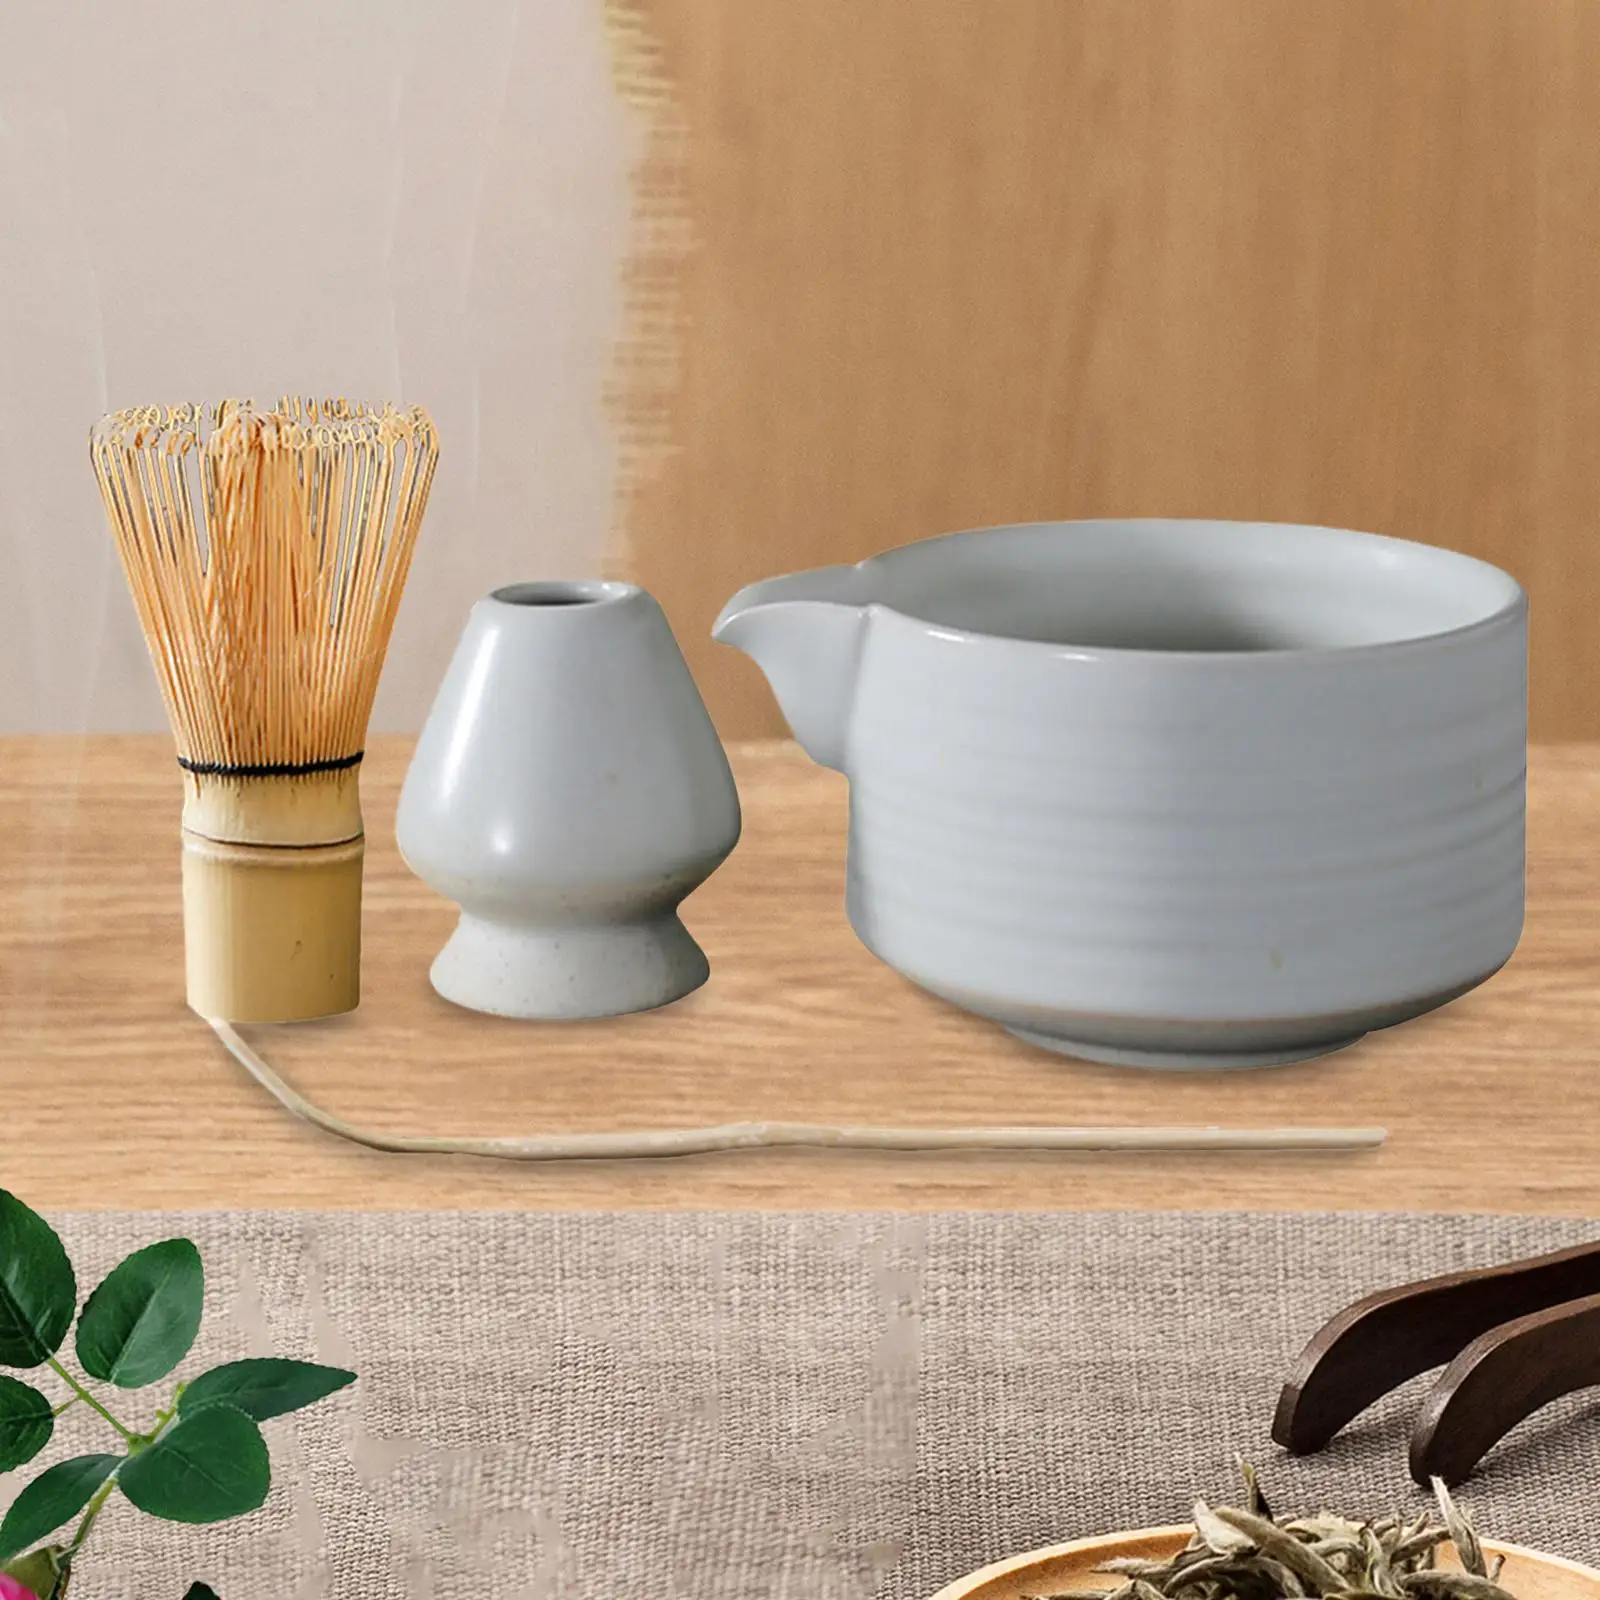 4x Japanese Set, Matcha Whisk, Traditional, Matcha Bowl, Ceramic Whisk Holder, Handmade Matcha Ceremony